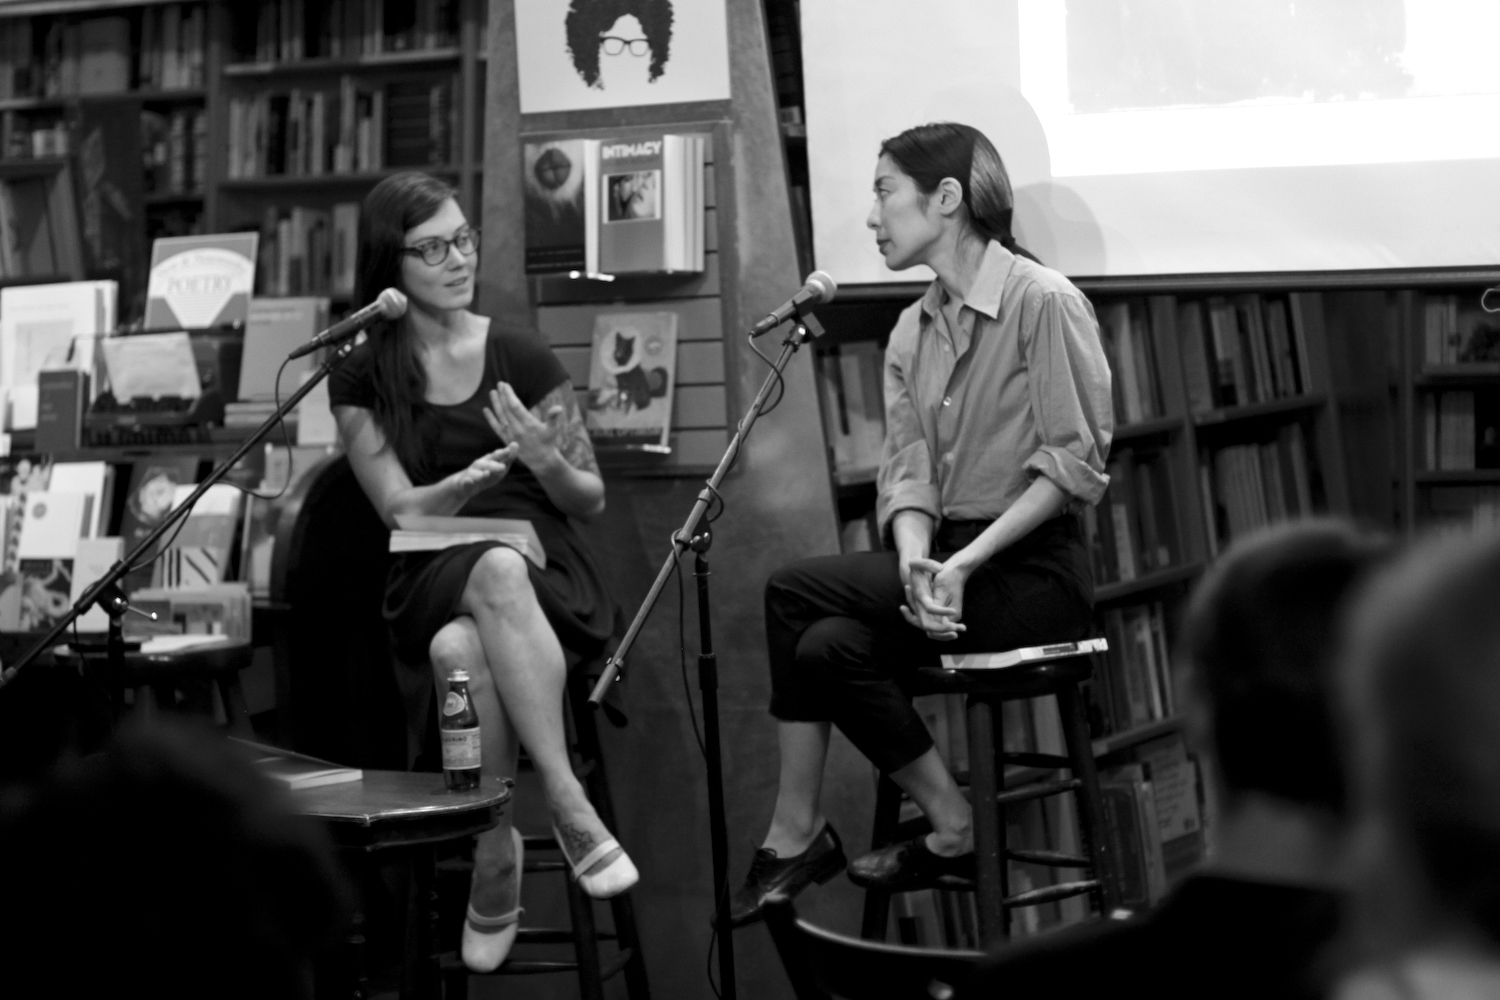  Katie Kitamura and Sarah Gerard in dialogue at McNally Jackson © Jesse Ruddock 